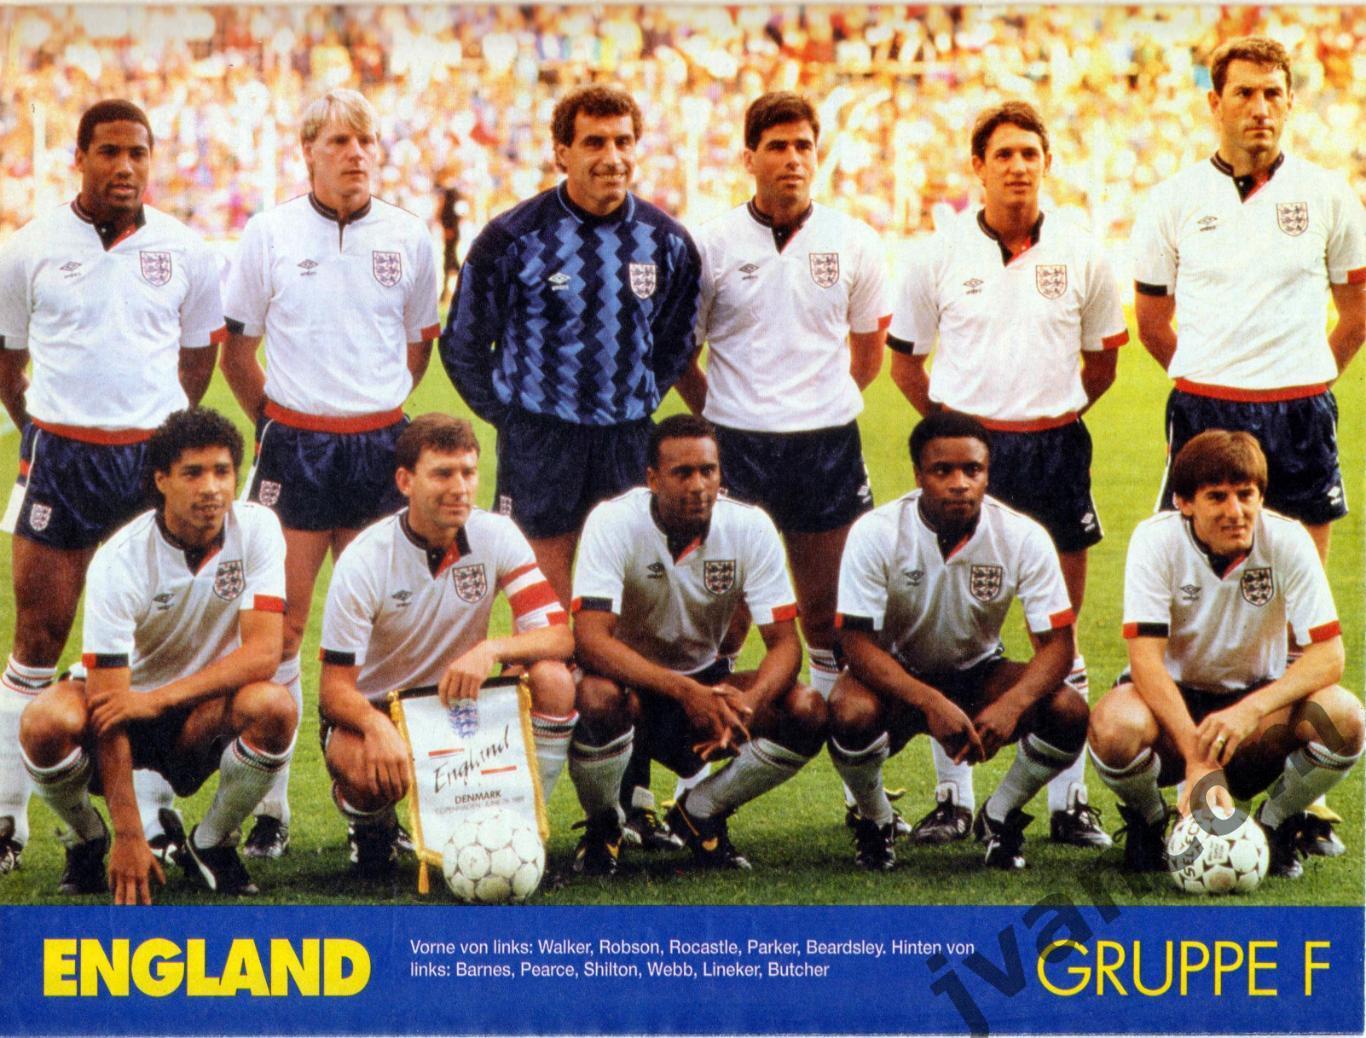 FUSSBALL SPORT. Чемпионат Мира по футболу 1990 года. Превью участников. 7